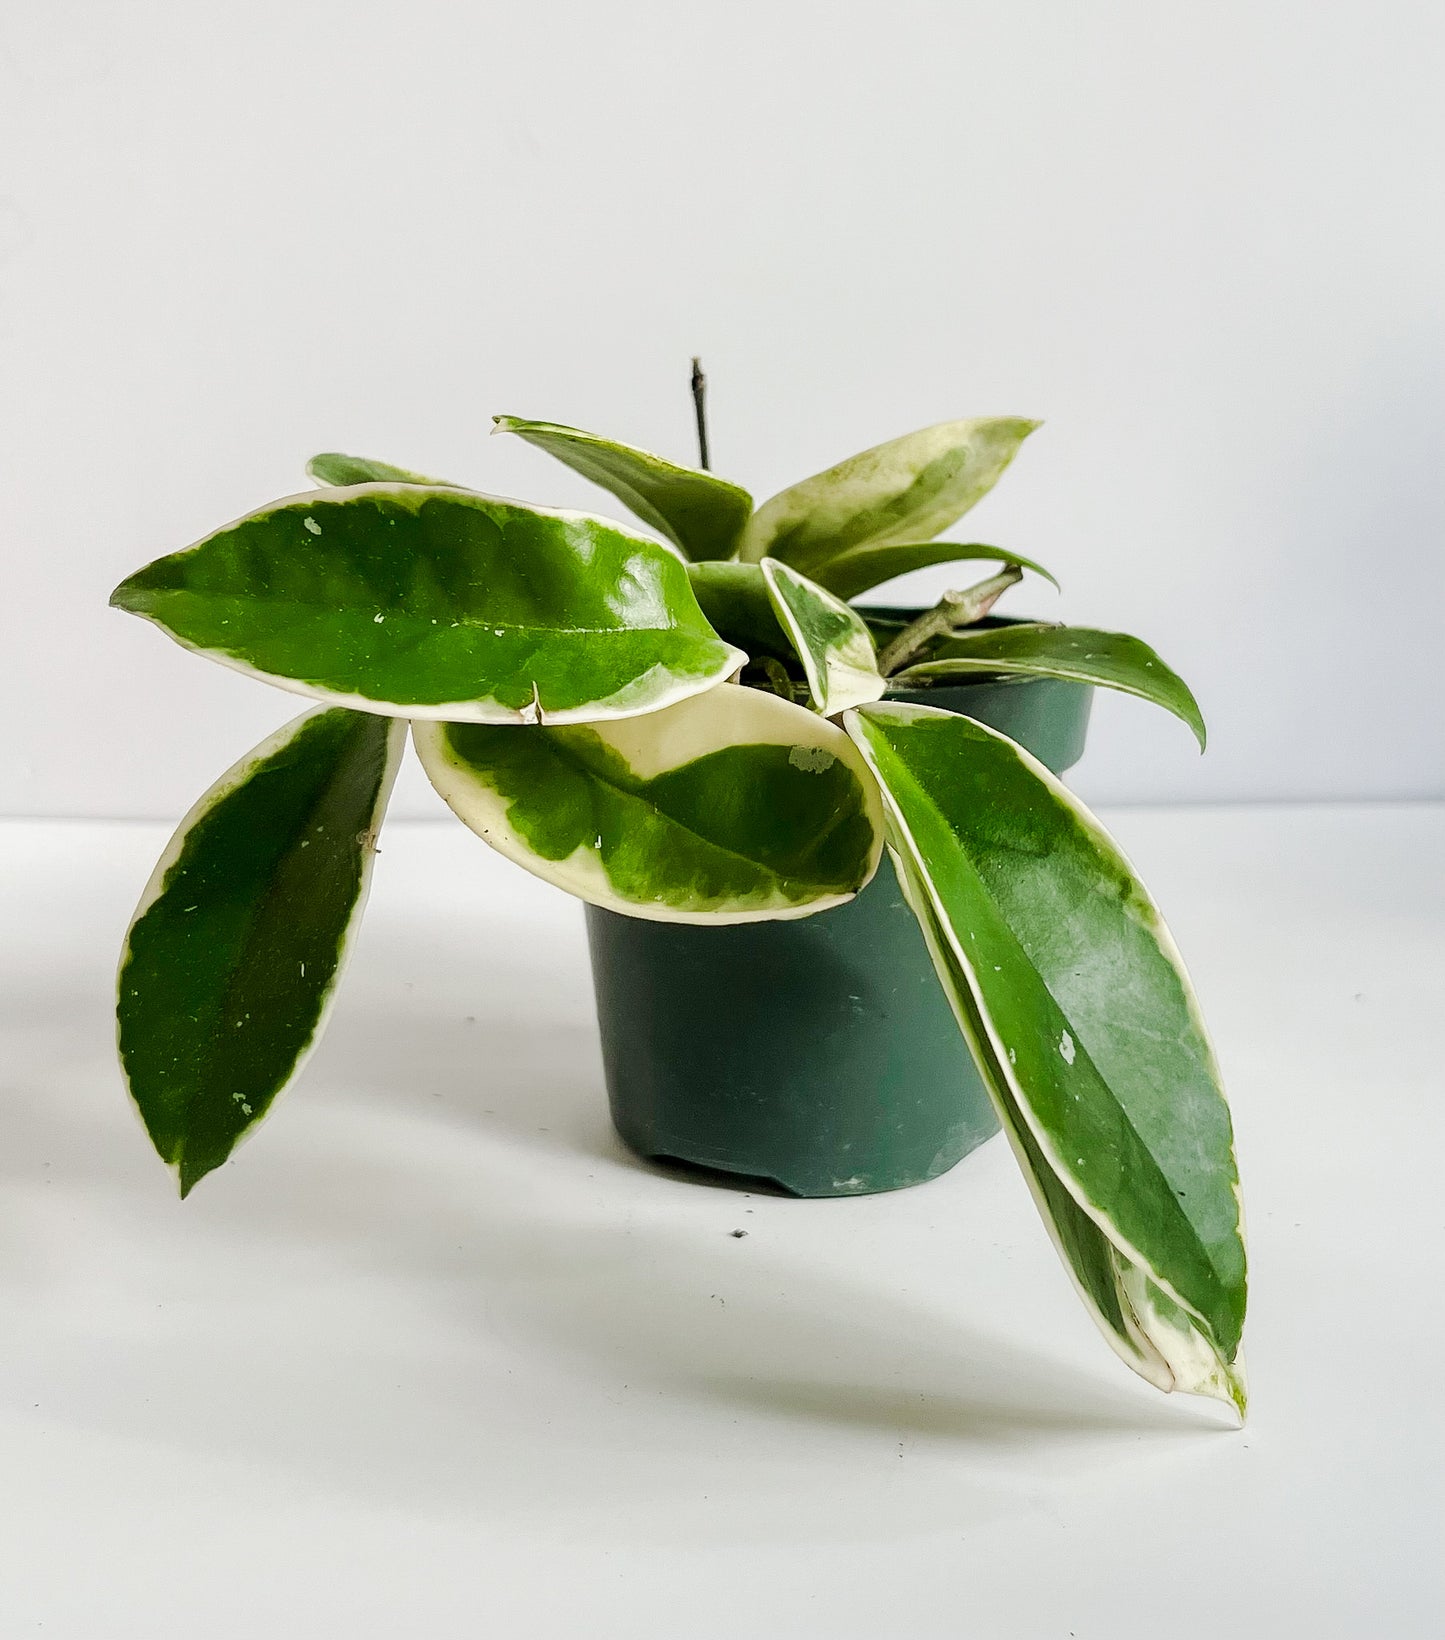 Hoya Carnosa 'Tricolor' Krimson Queen Plant (🐾 Pet Friendly)